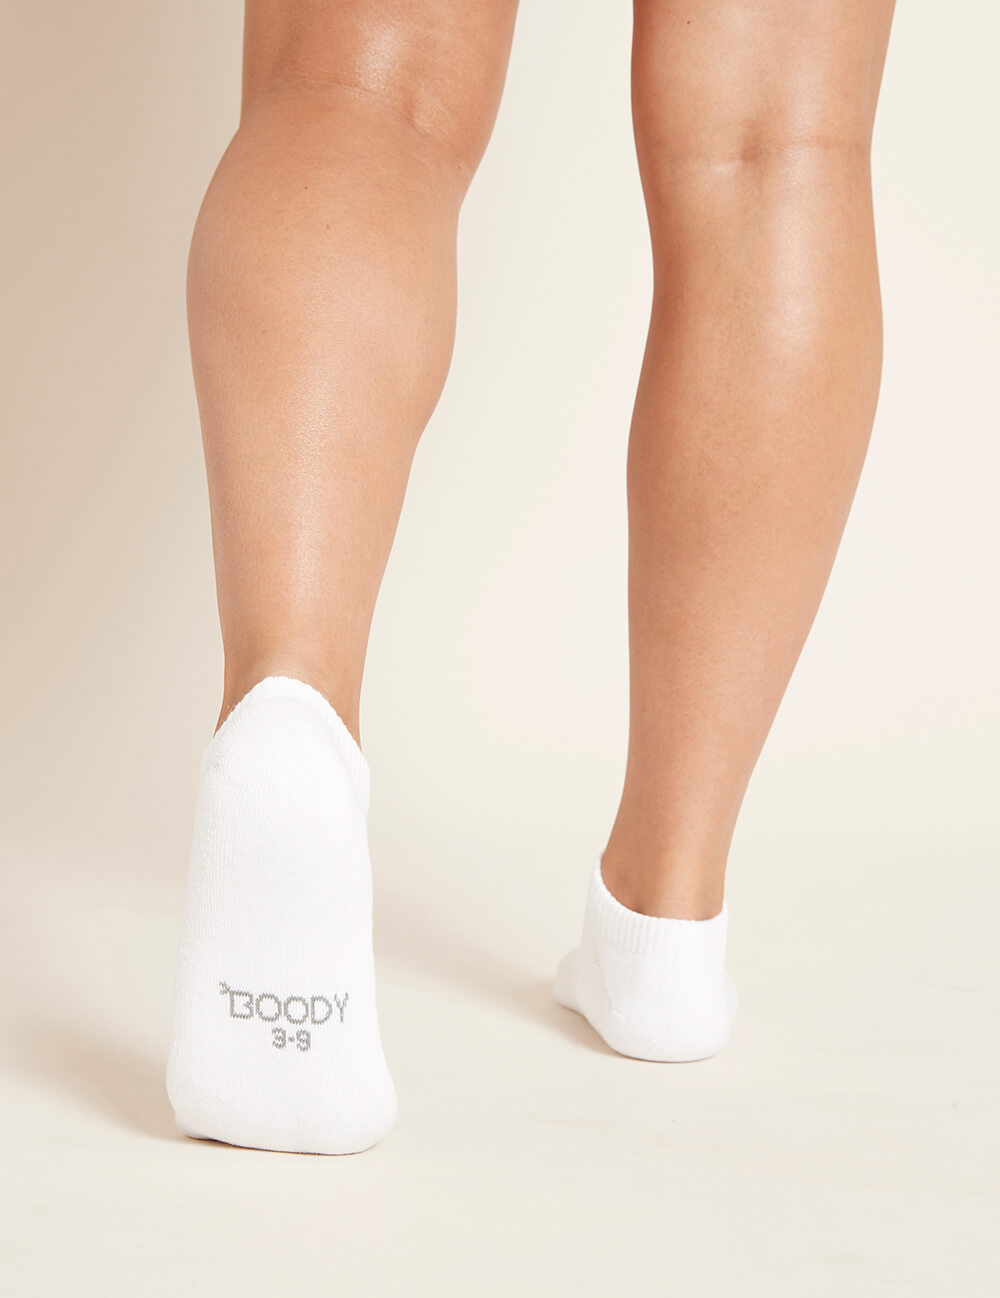 https://boodywear.co.za/cdn/shop/products/Women_s-Low-Cut-Cushioned-Sneaker-Socks-White-Back_1.jpg?v=1664879496